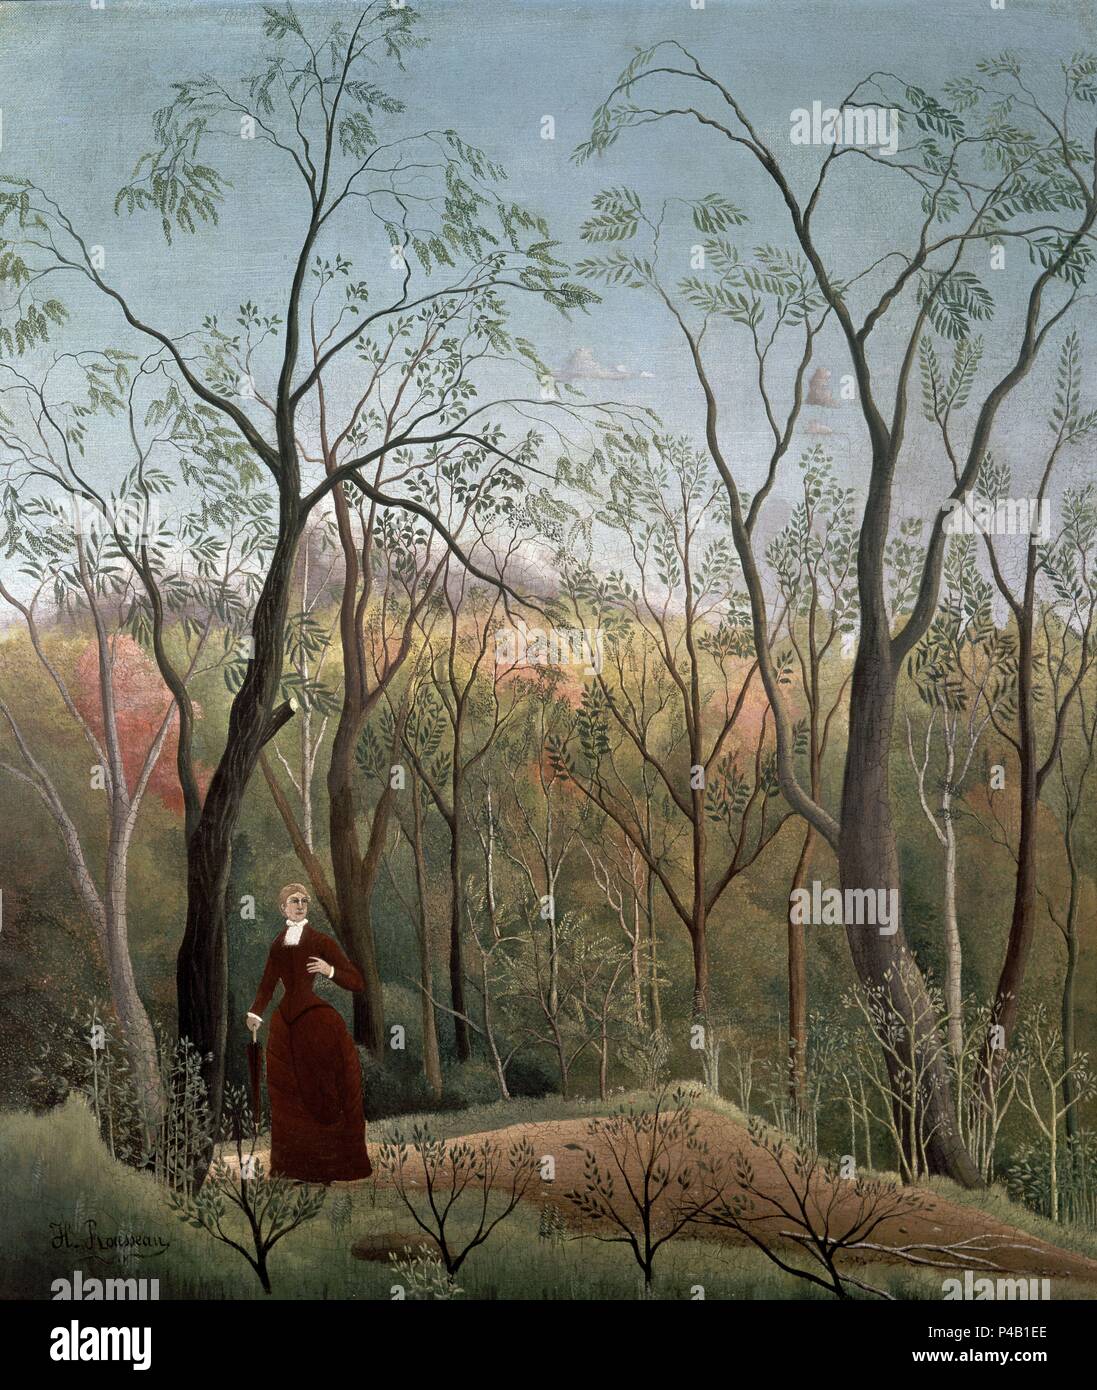 La promenade dans la forêt - 1886 - 70x60,5 cm - Huile sur toile. Auteur : Henri Rousseau (1844-1910). Emplacement : Kunsthaus, Zurich, Suisse. Aussi connu sous : PASEO EN EL BOSQUE DE SAINT GERMAIN. Banque D'Images